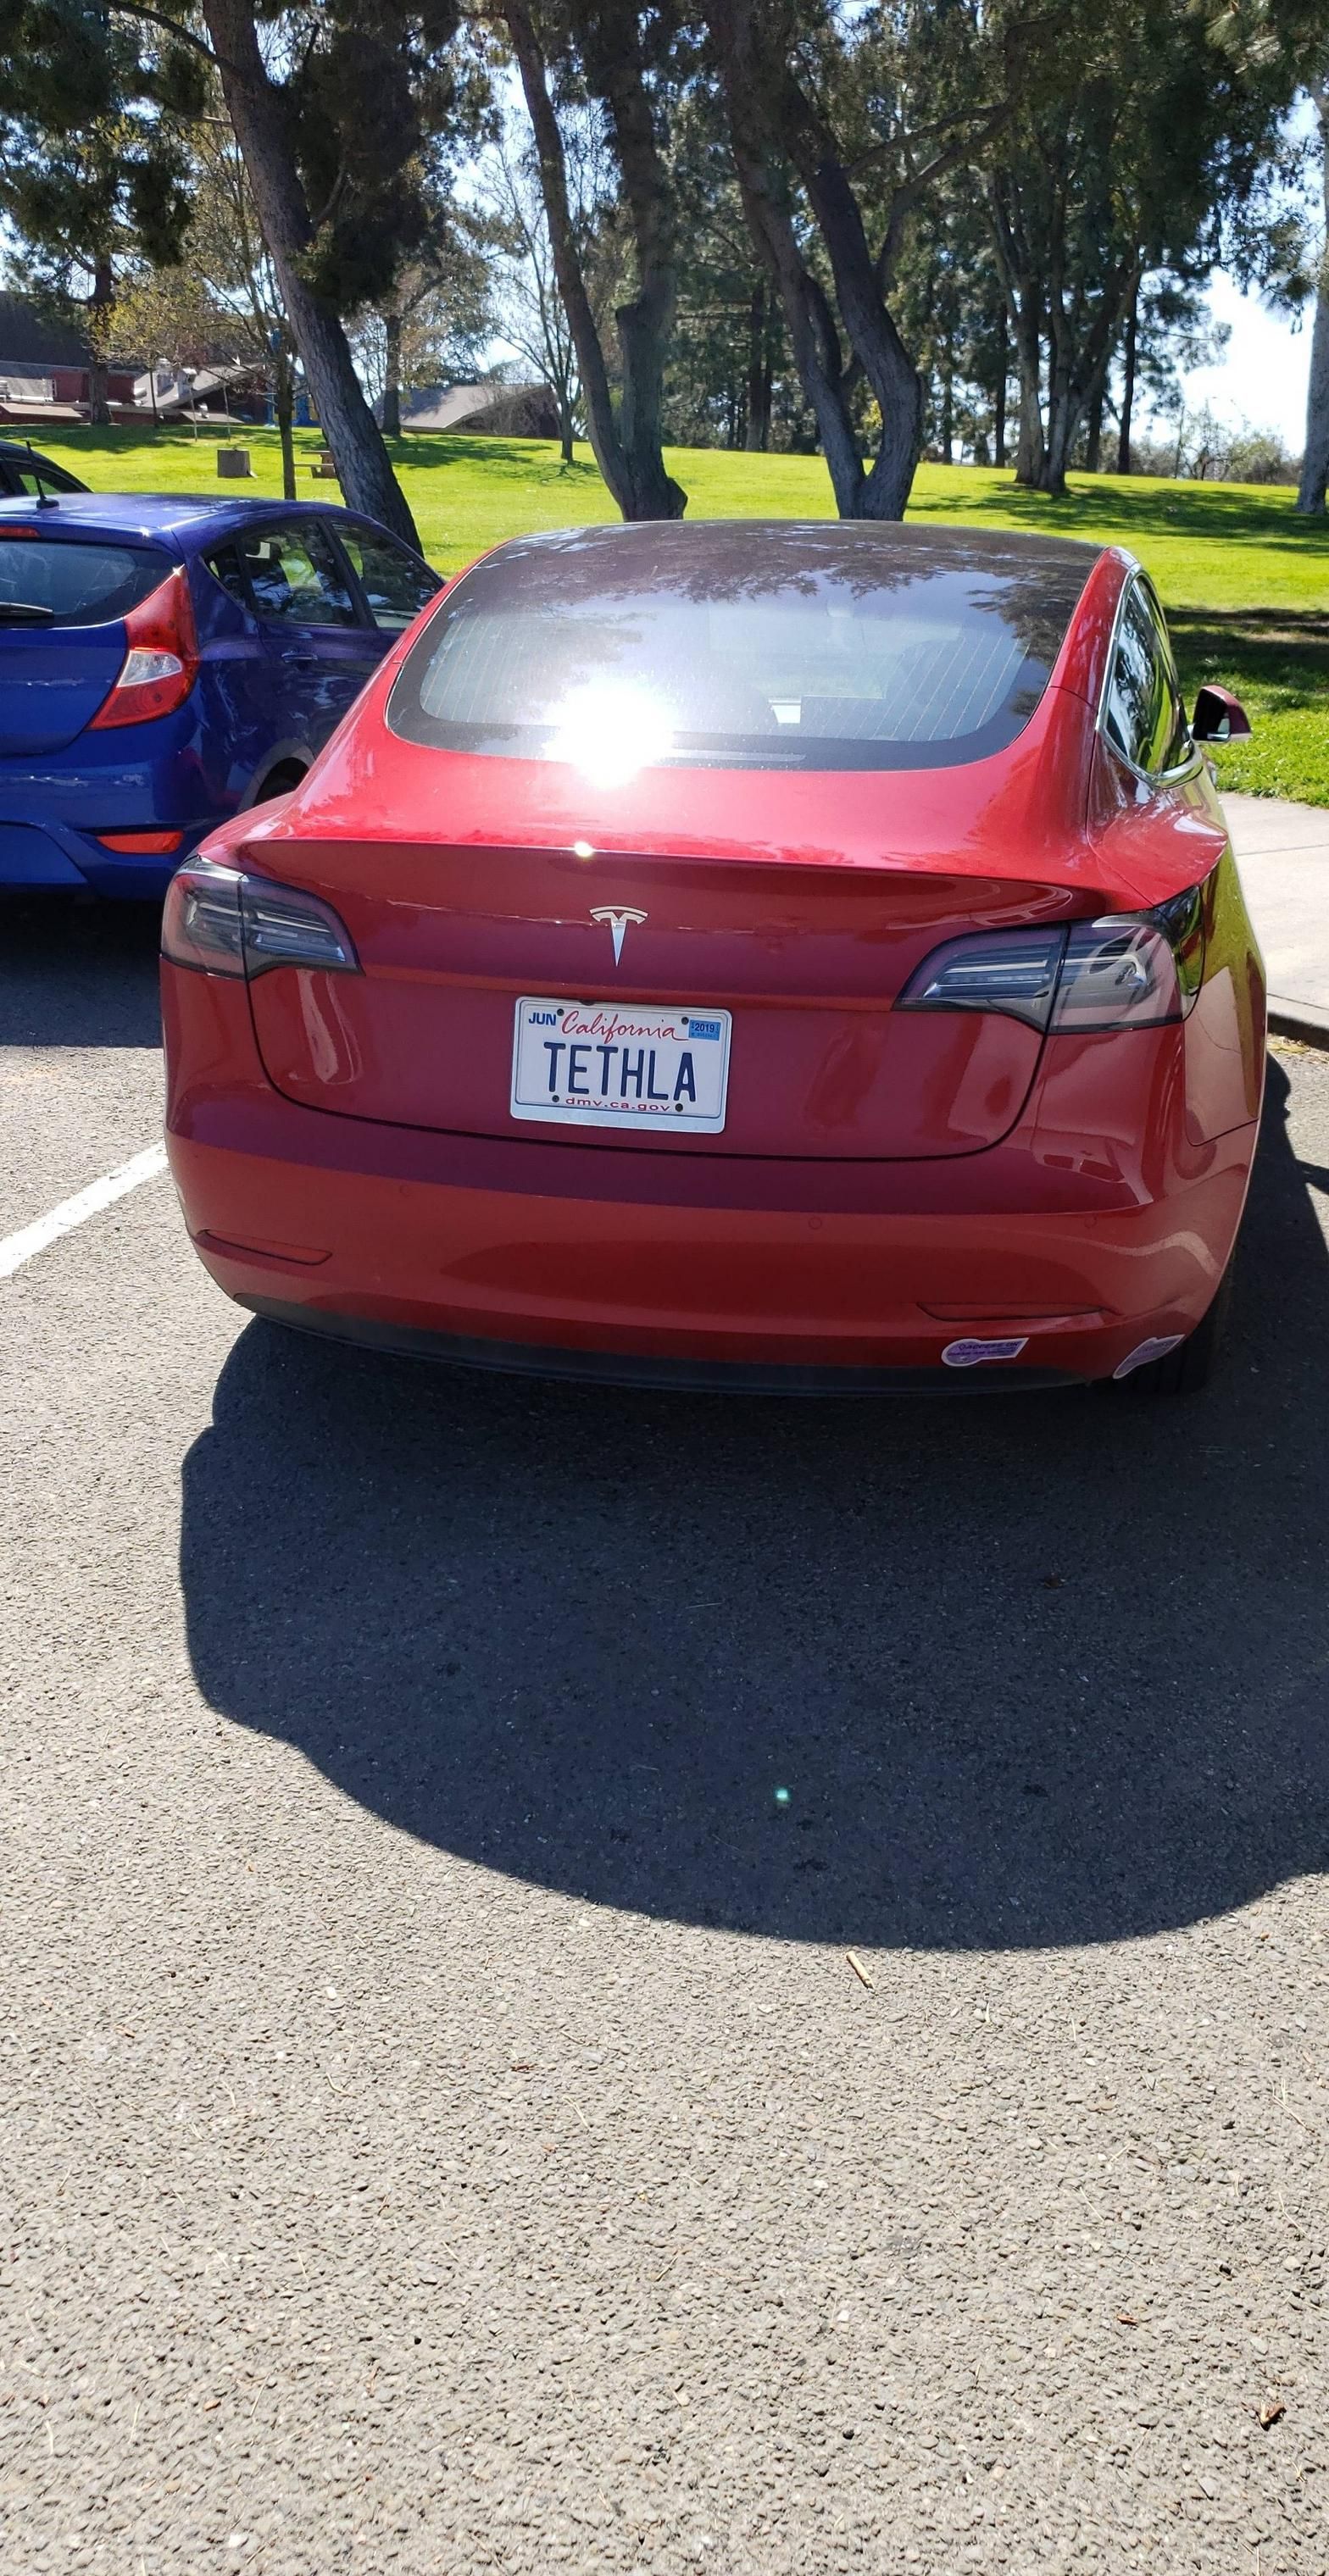 I think I found Mike Tyson's Tesla